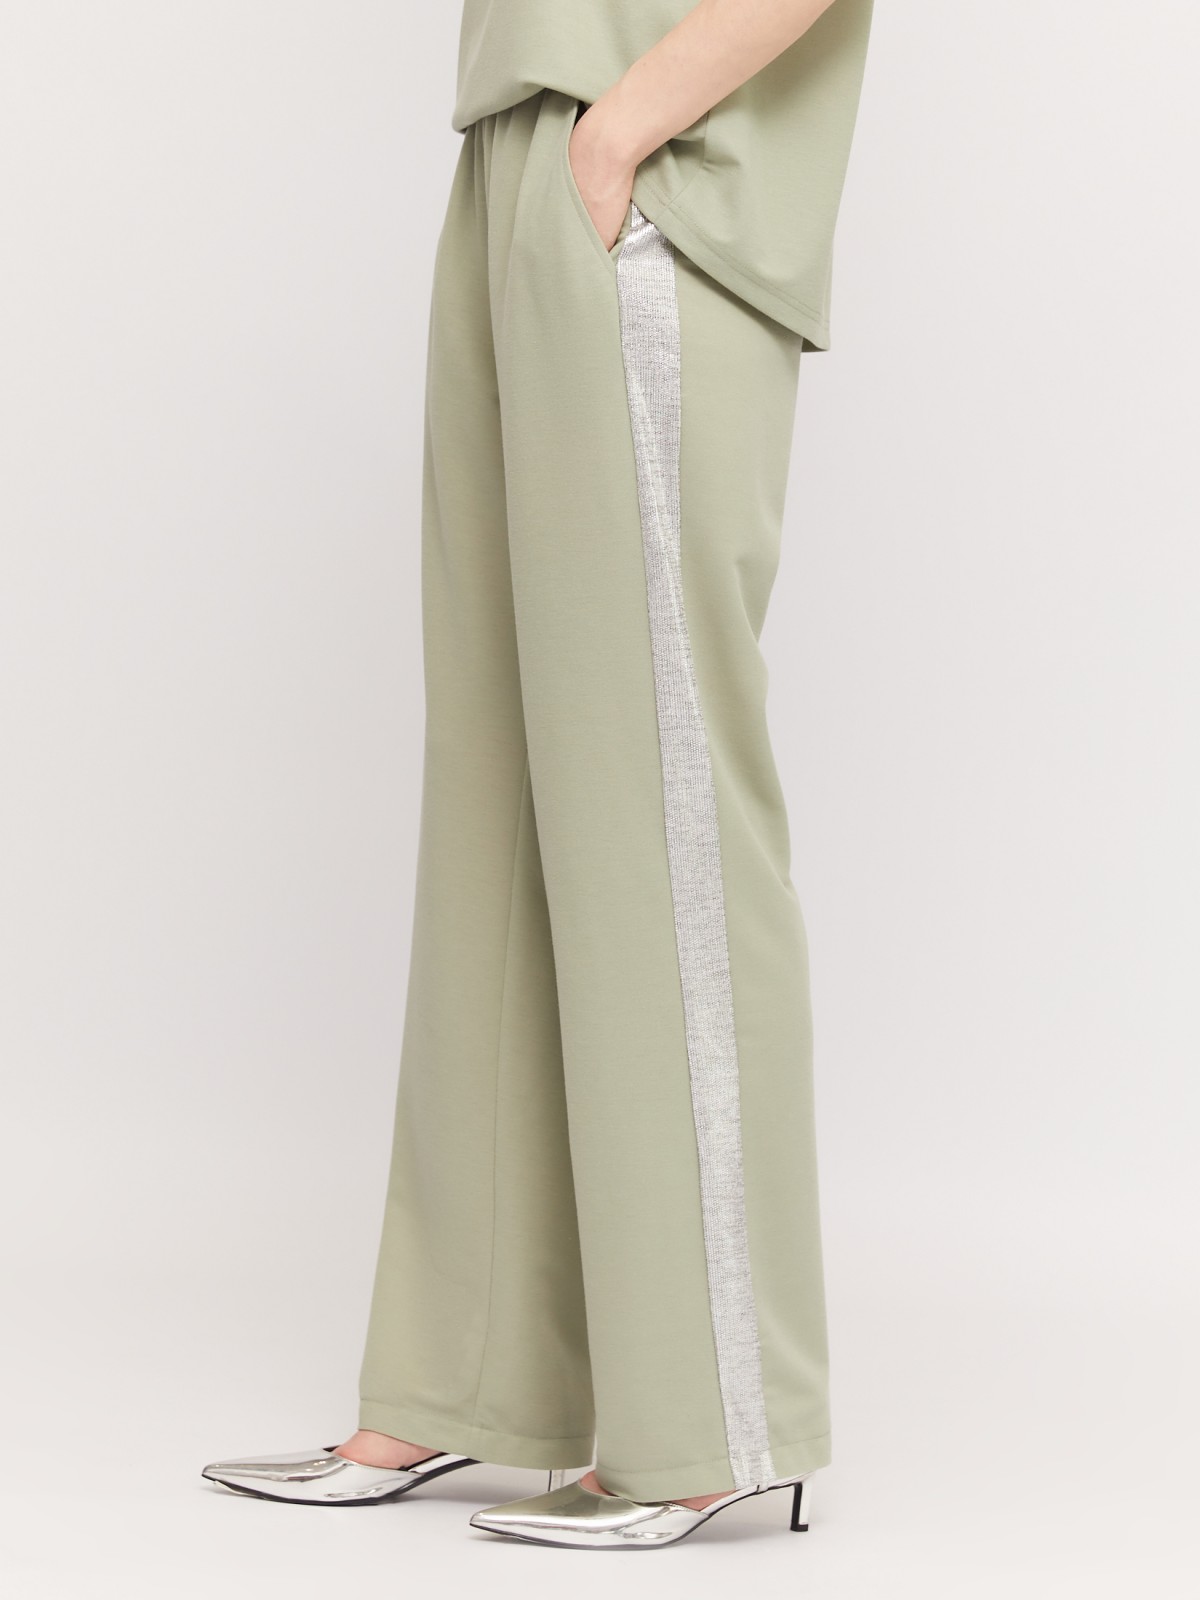 Трикотажные брюки-джоггеры с лампасами zolla 02424739Y023, цвет светло-зеленый, размер M - фото 4